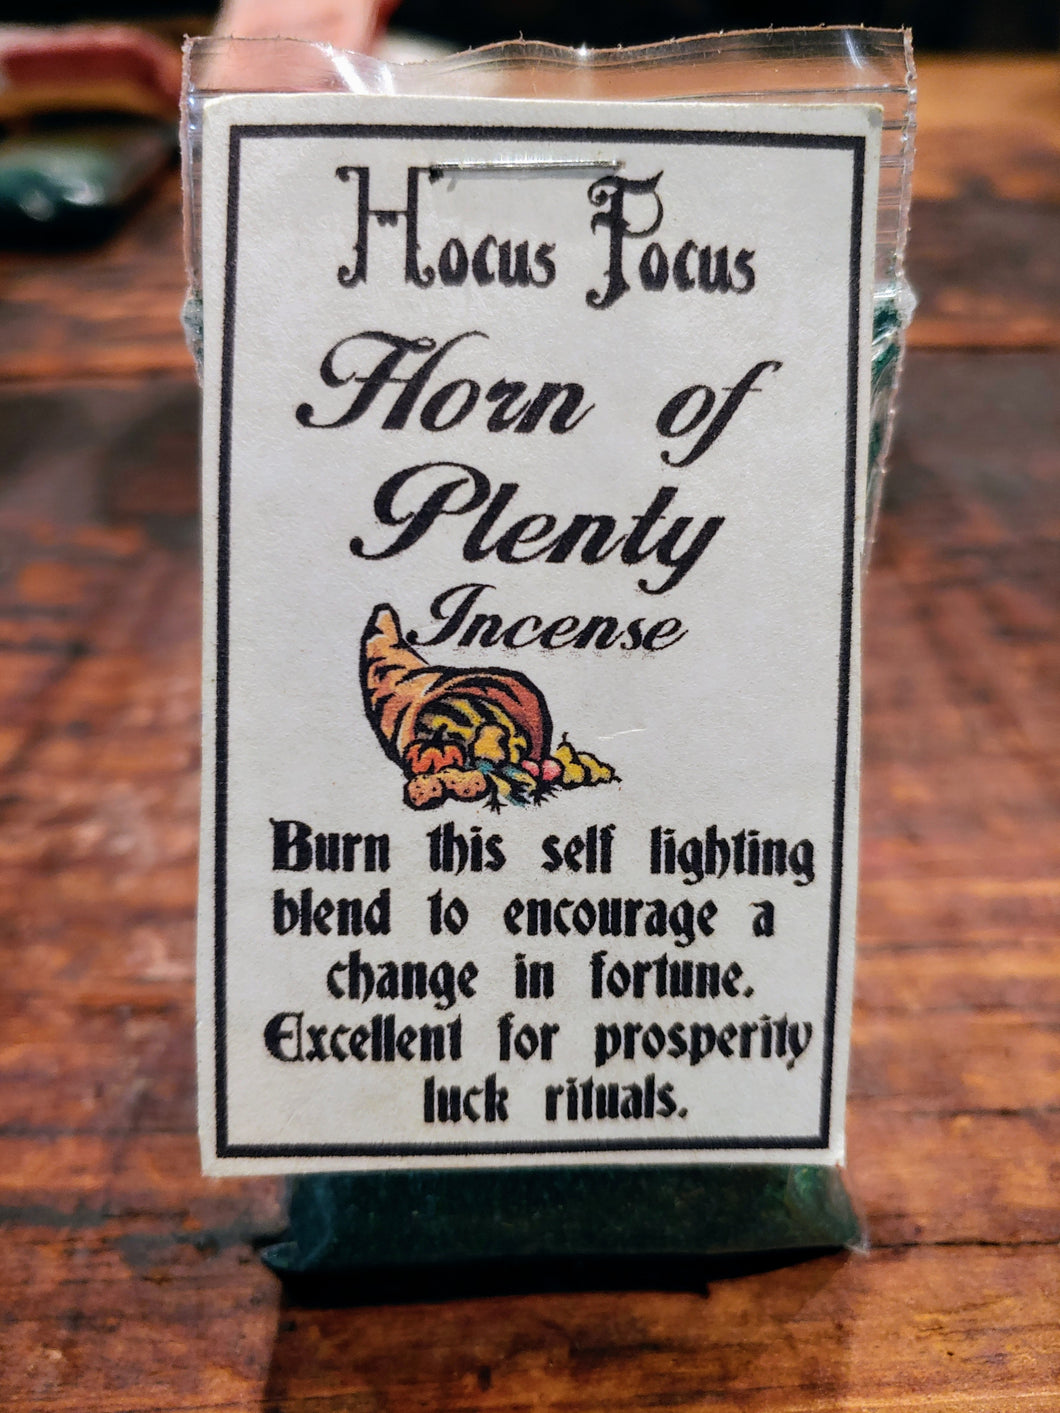 Hocus Pocus Horn of Plenty Incense